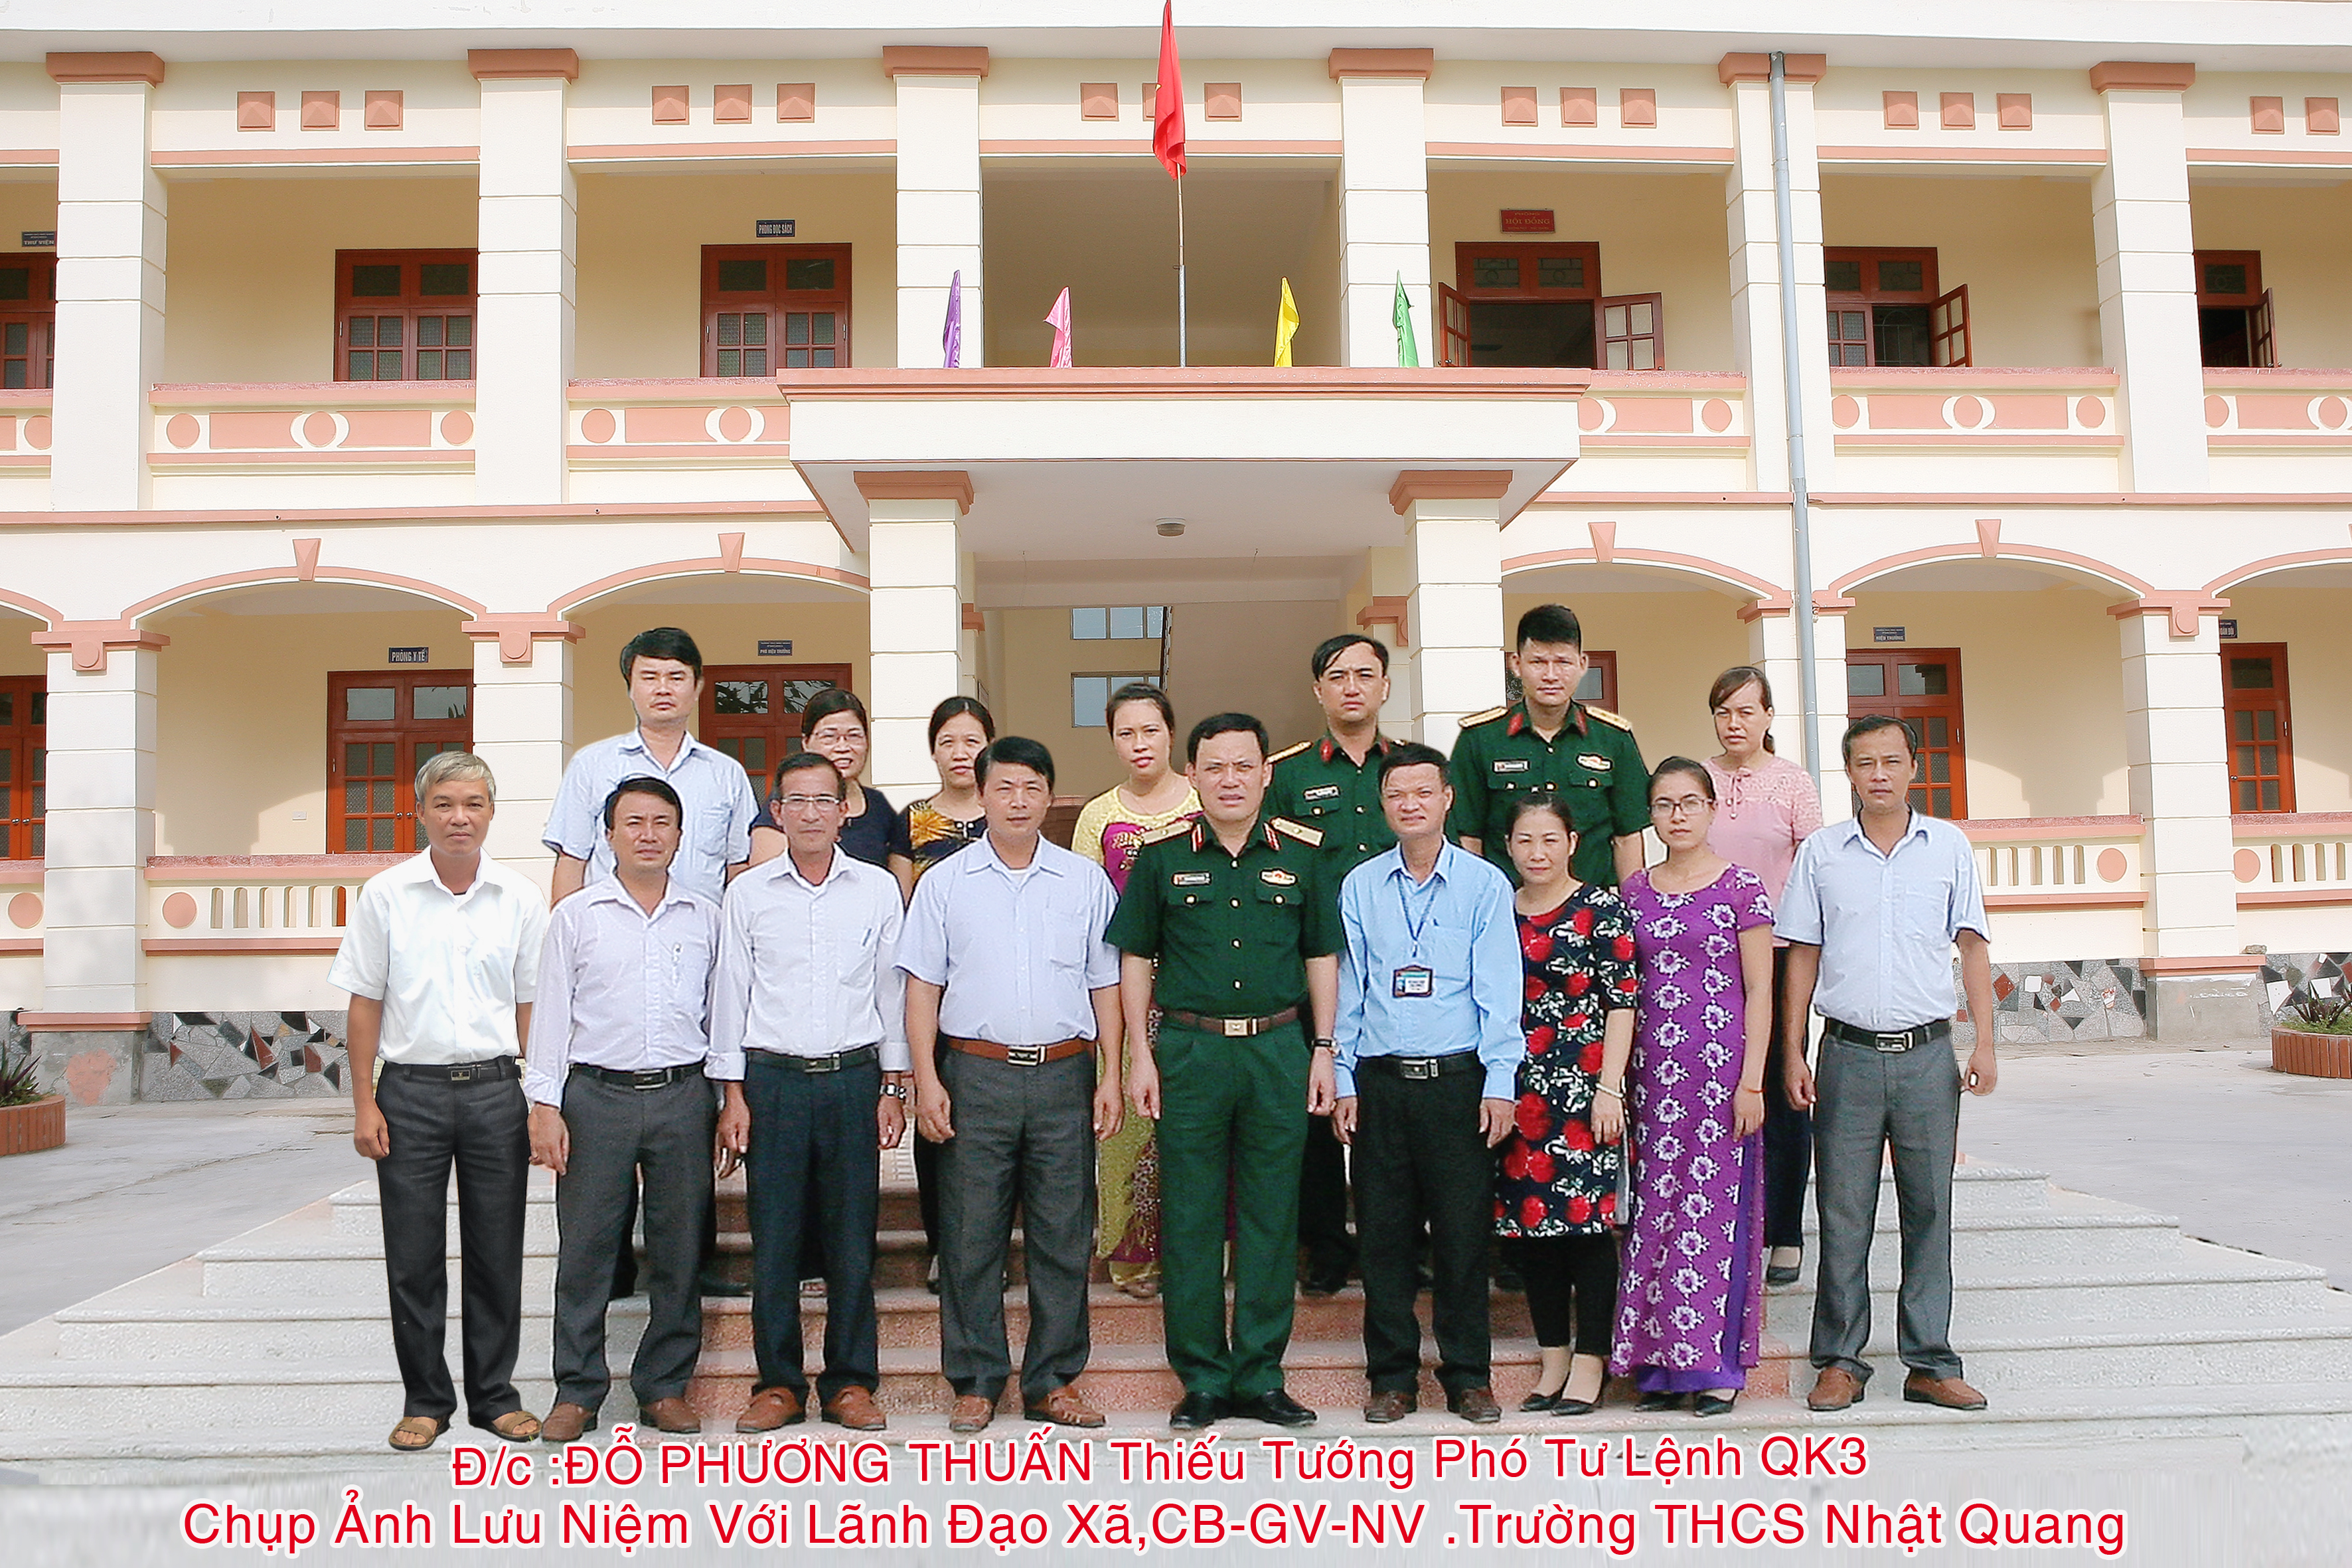 Trường THCS Nhật Quang